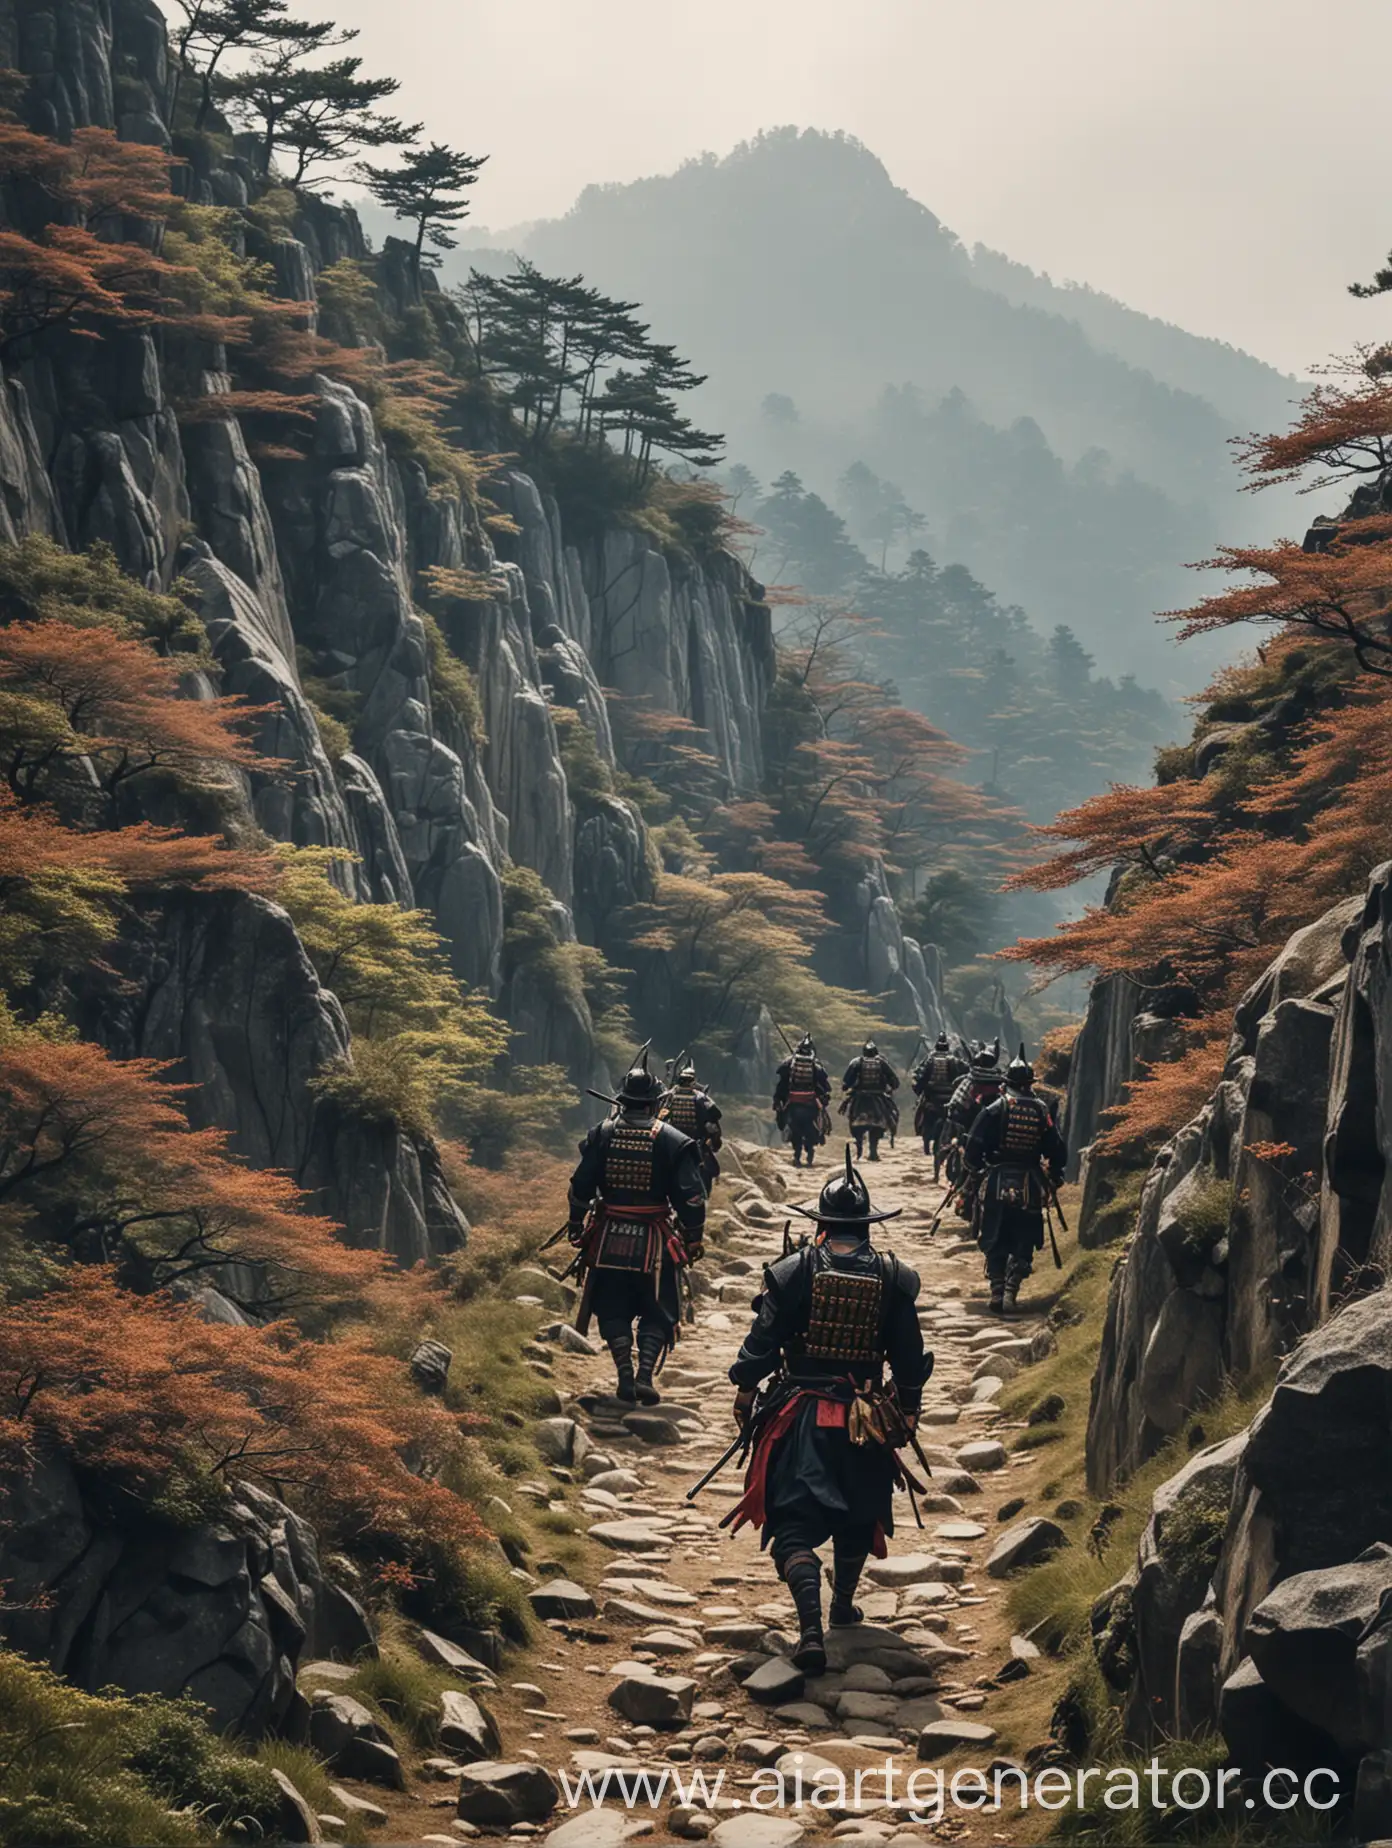 Samurai-Squad-Ascending-Mountain-Pass-in-Valor